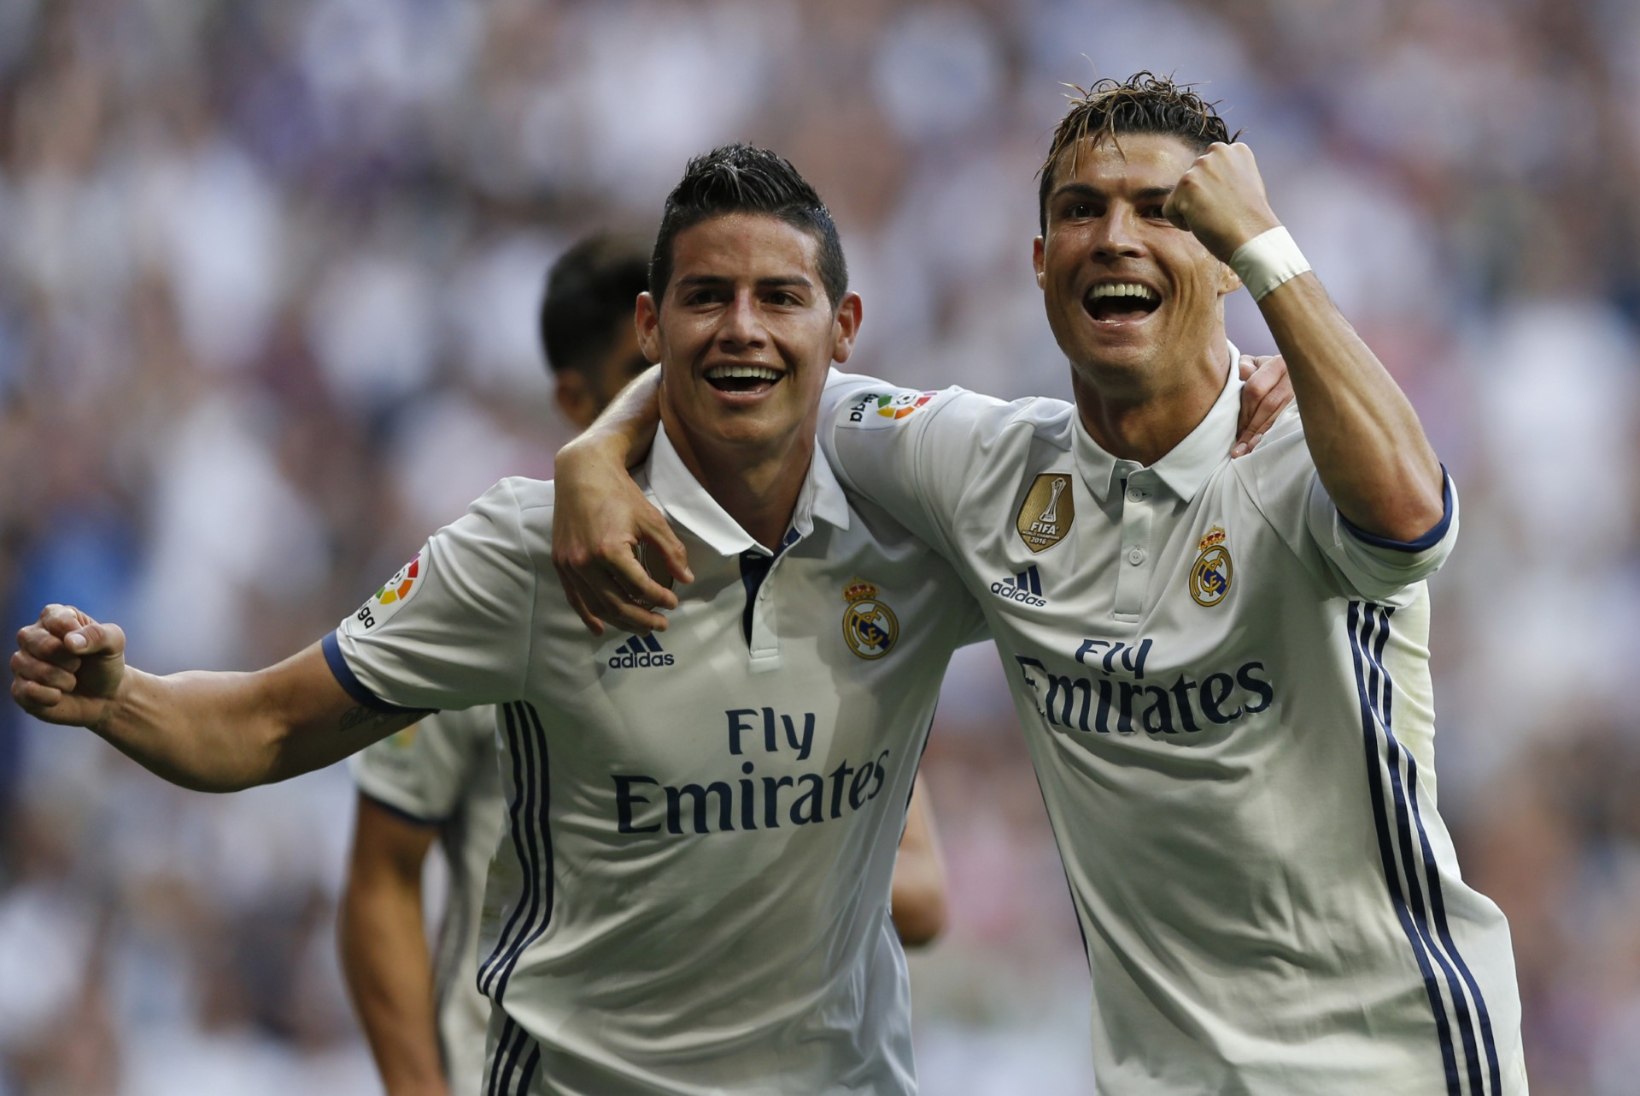 TOHOH! Reali superstaar võttis Ronaldost eeskuju ja sai salaja isaks